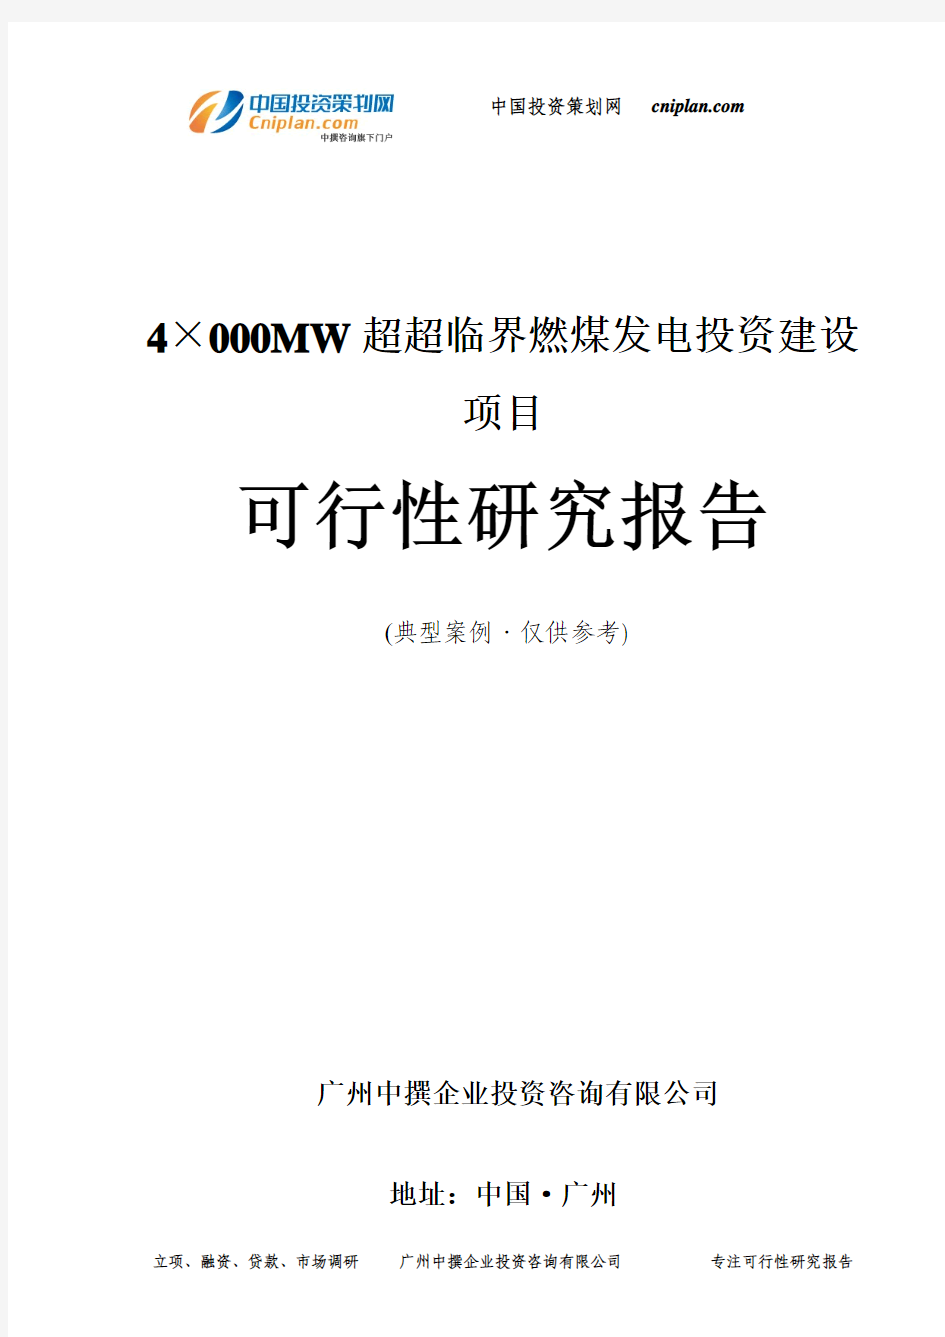 4×000MW超超临界燃煤发电投资建设项目可行性研究报告-广州中撰咨询